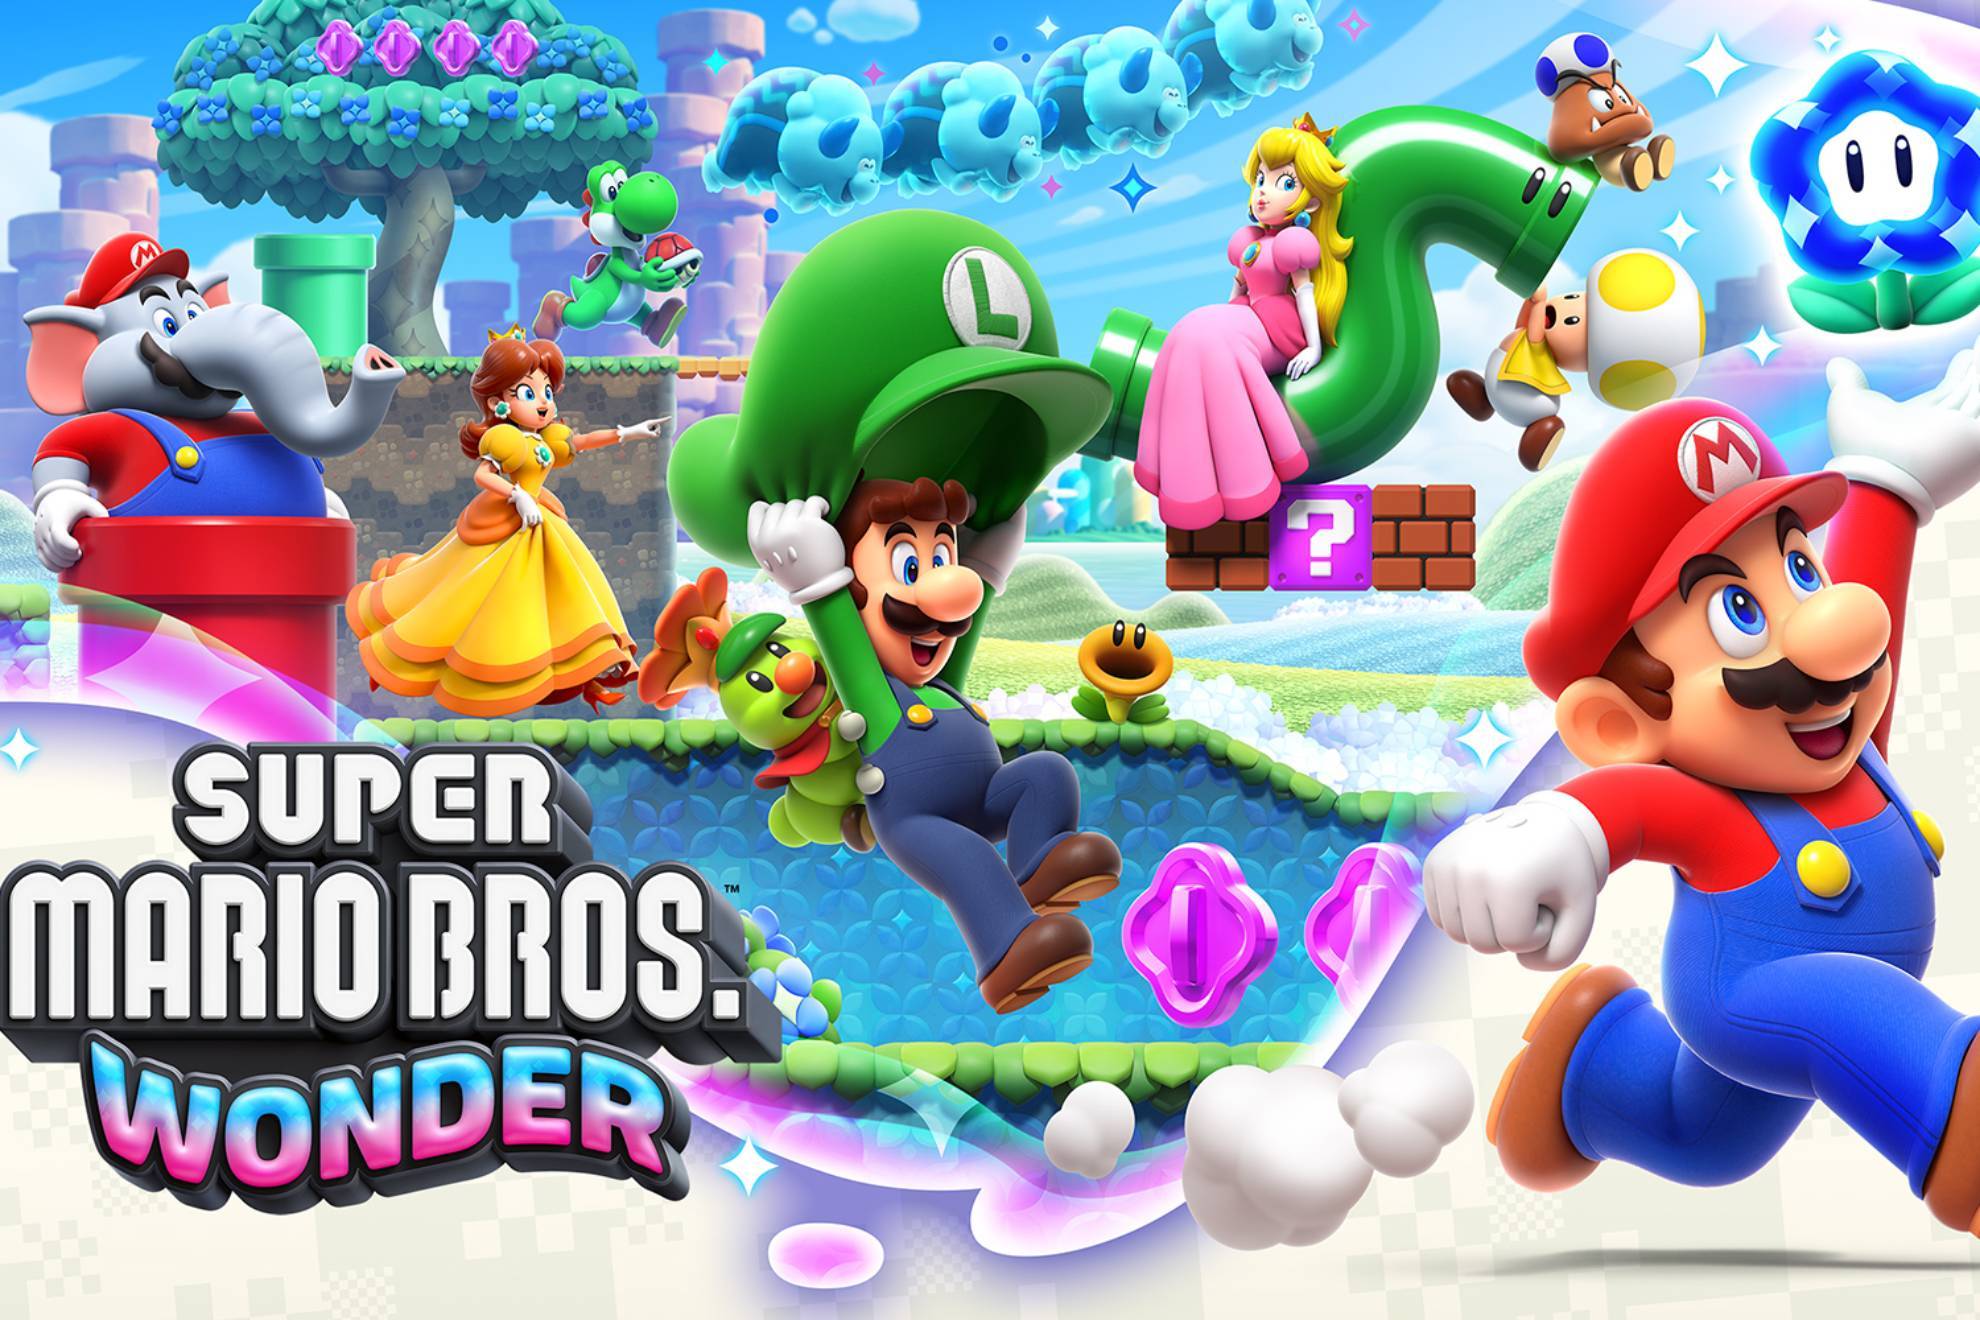 Super Mario Bros Wonder: fecha de lanzamiento, duración, precio, ediciones y dónde comprar